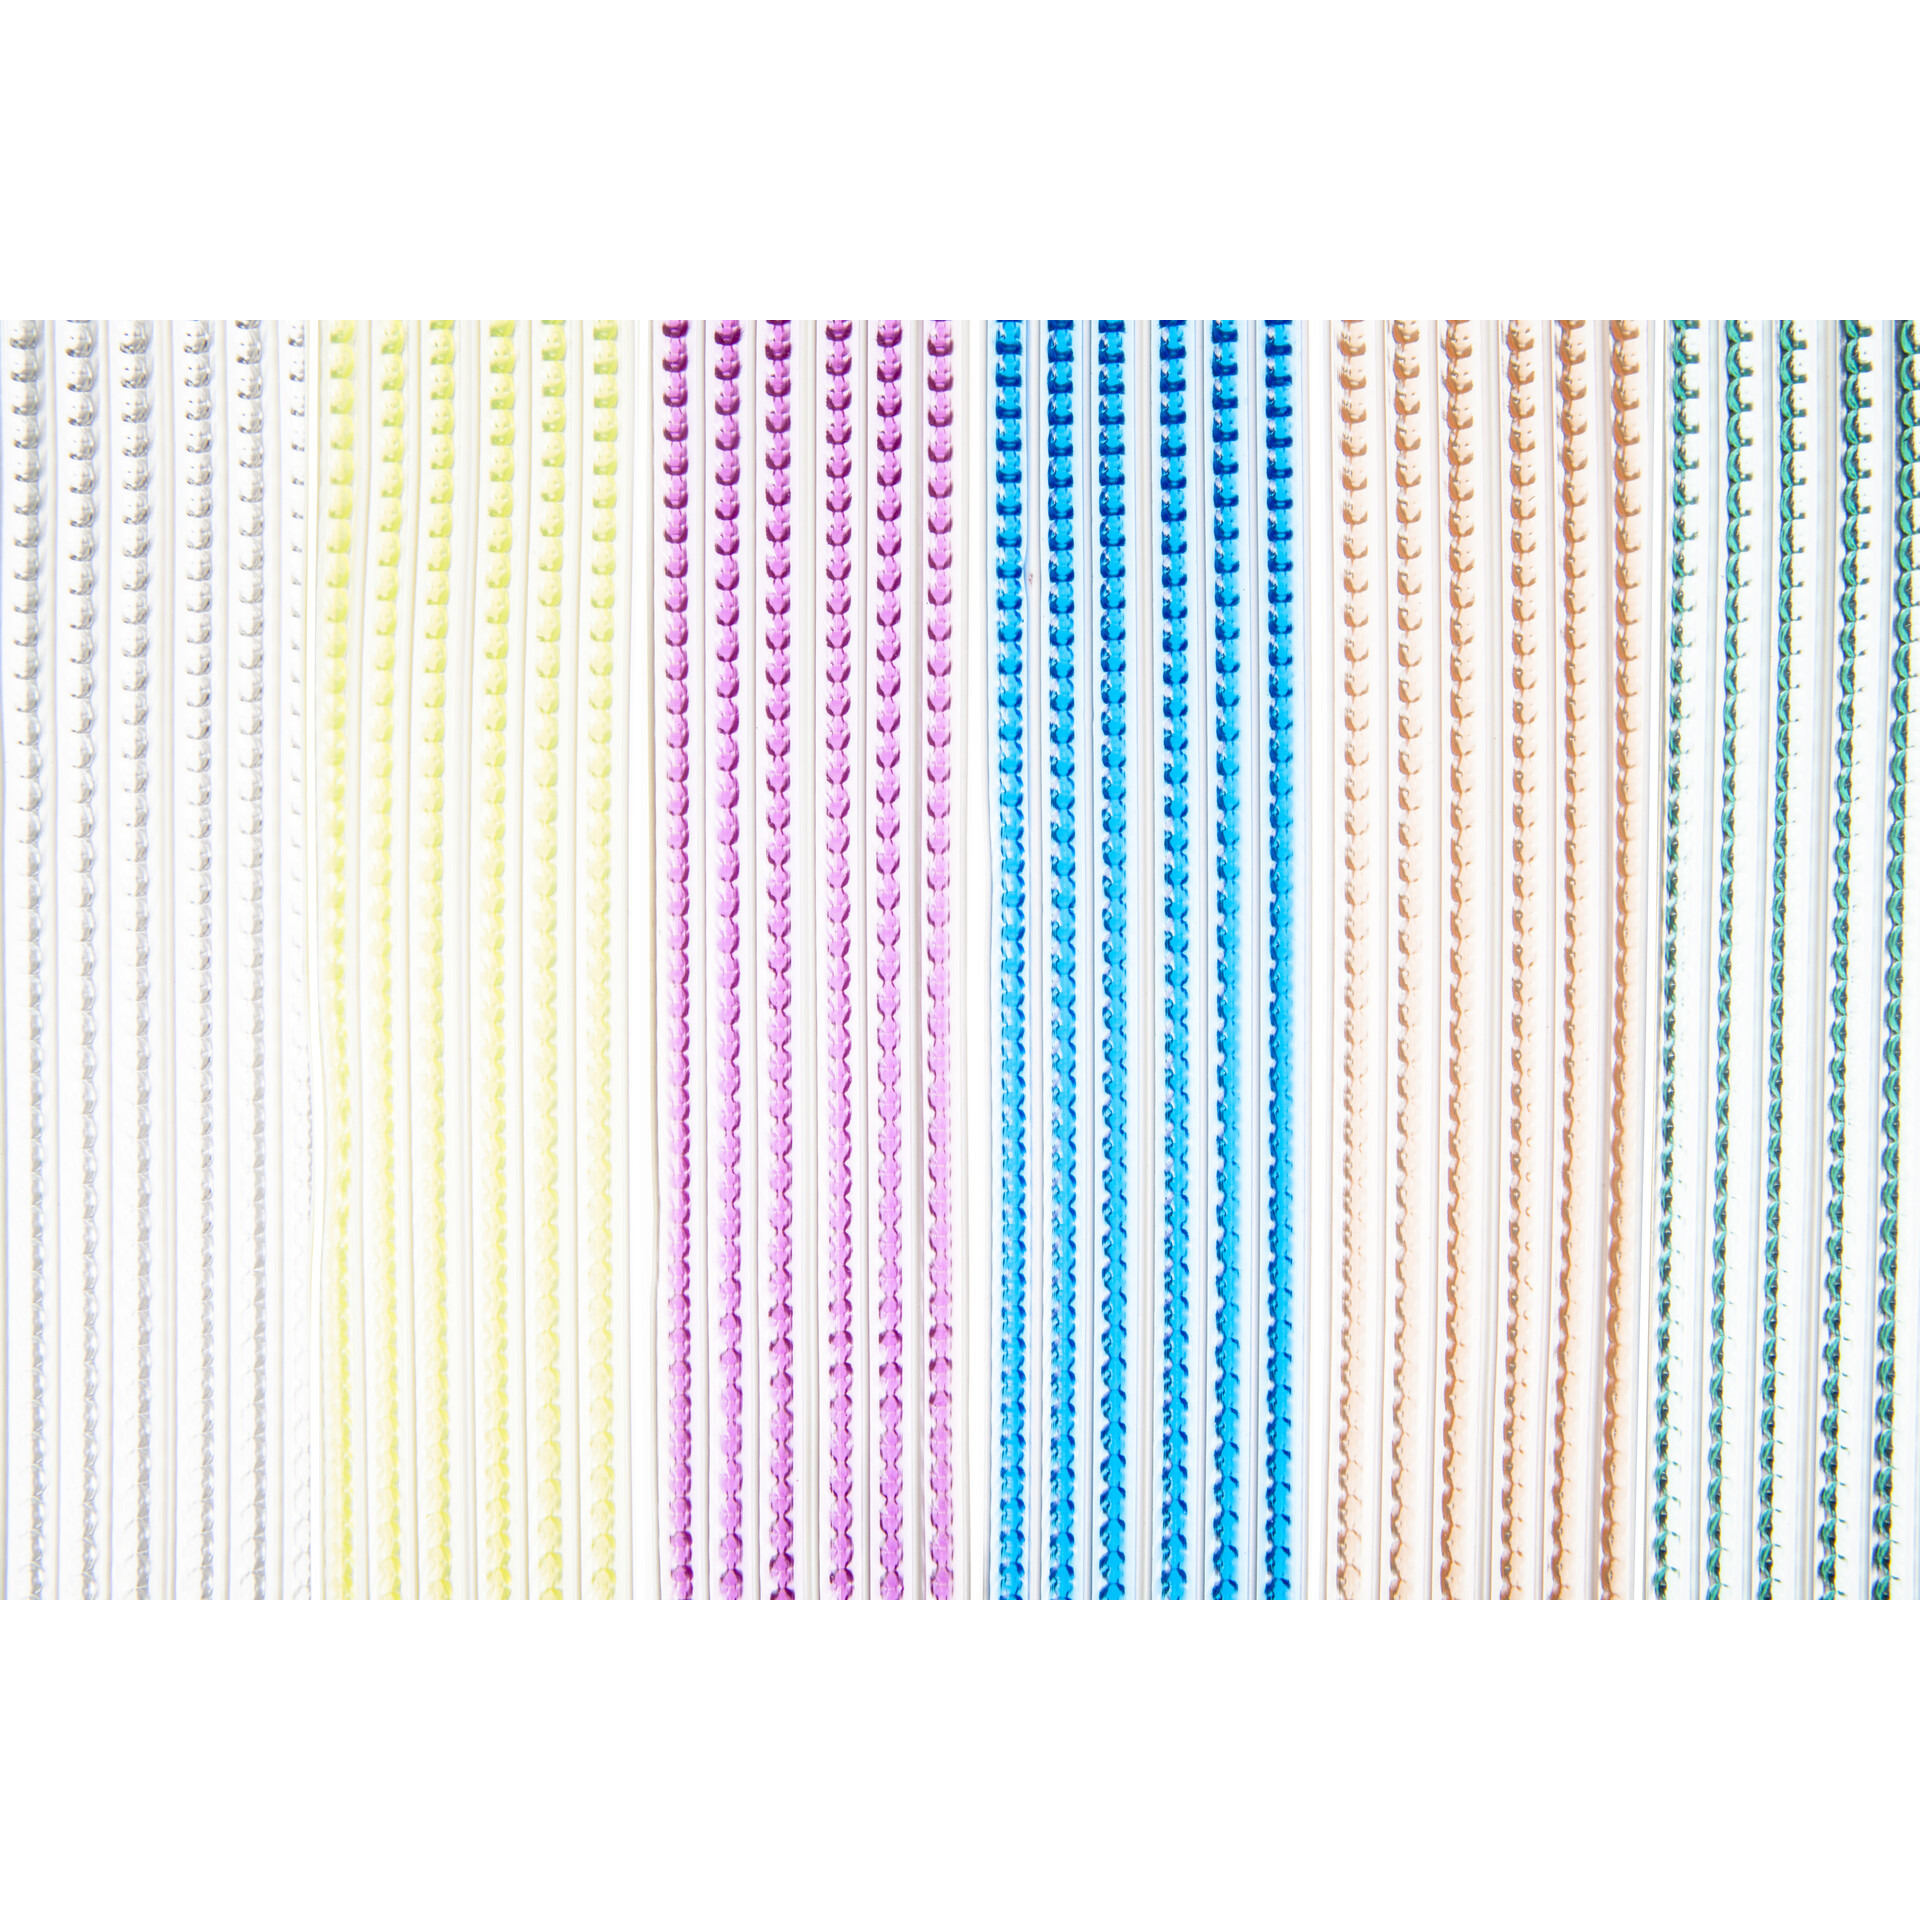 Multicolor kunststof vliegen-insecten kralen gordijn 93 x 220 cm